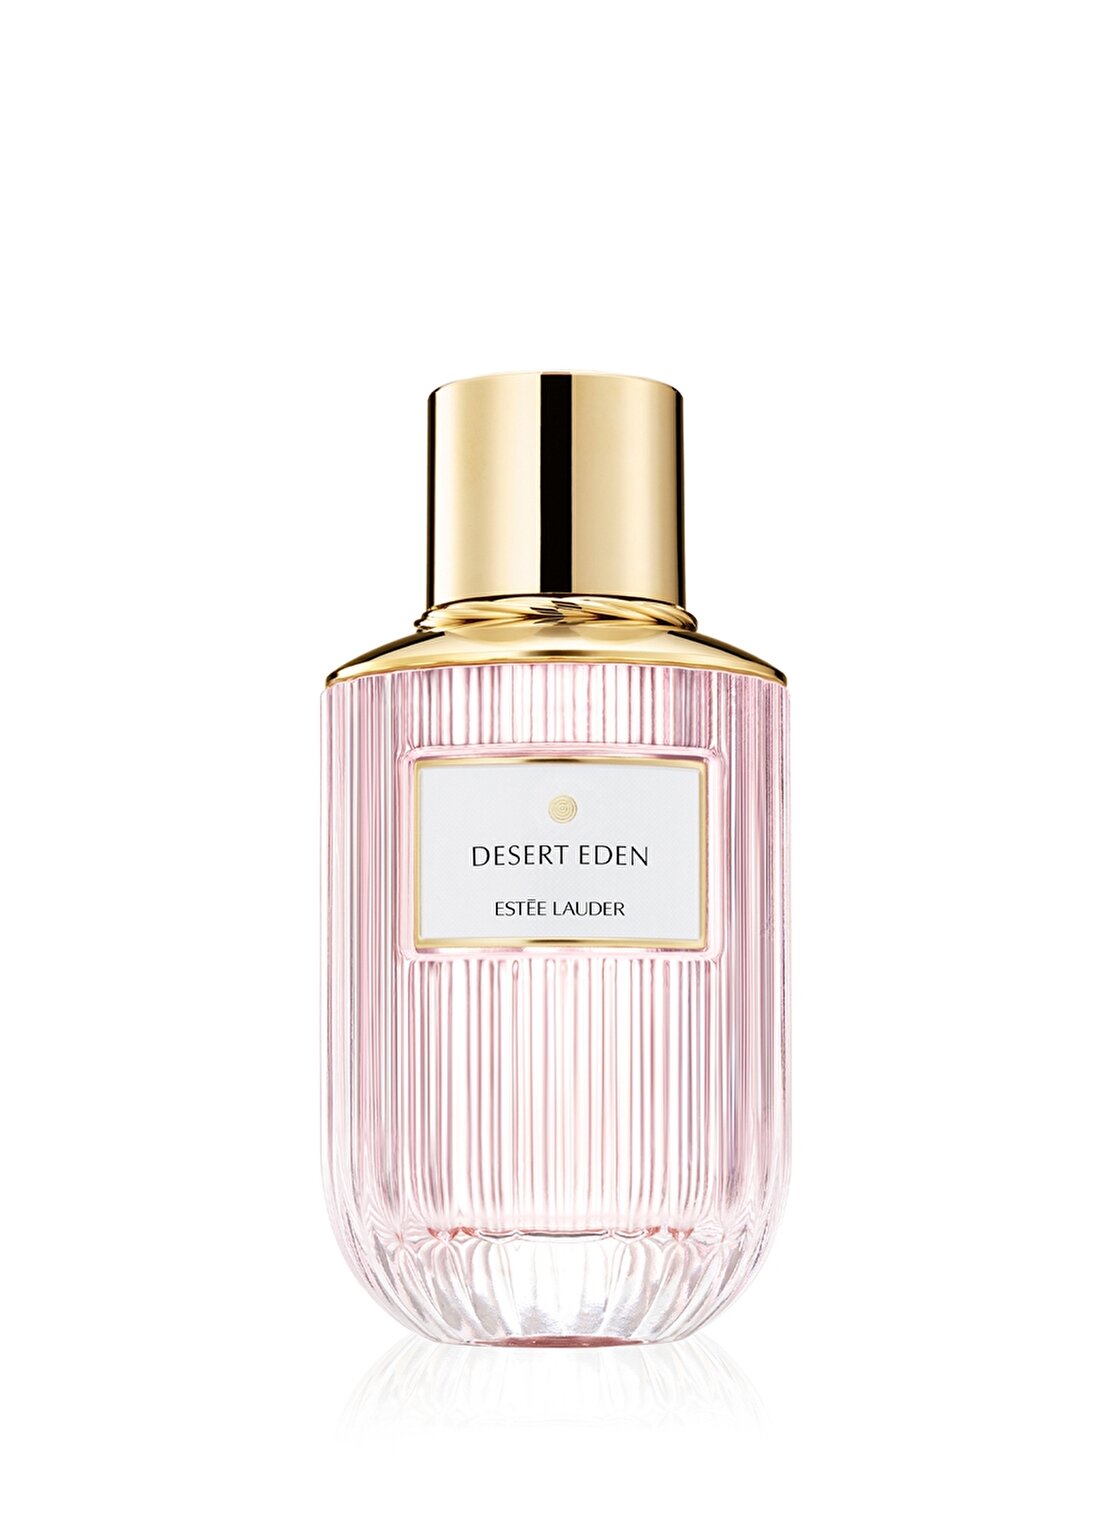 Estee Lauder Luxury Fragrance – Desert Eden Edp 100 Ml